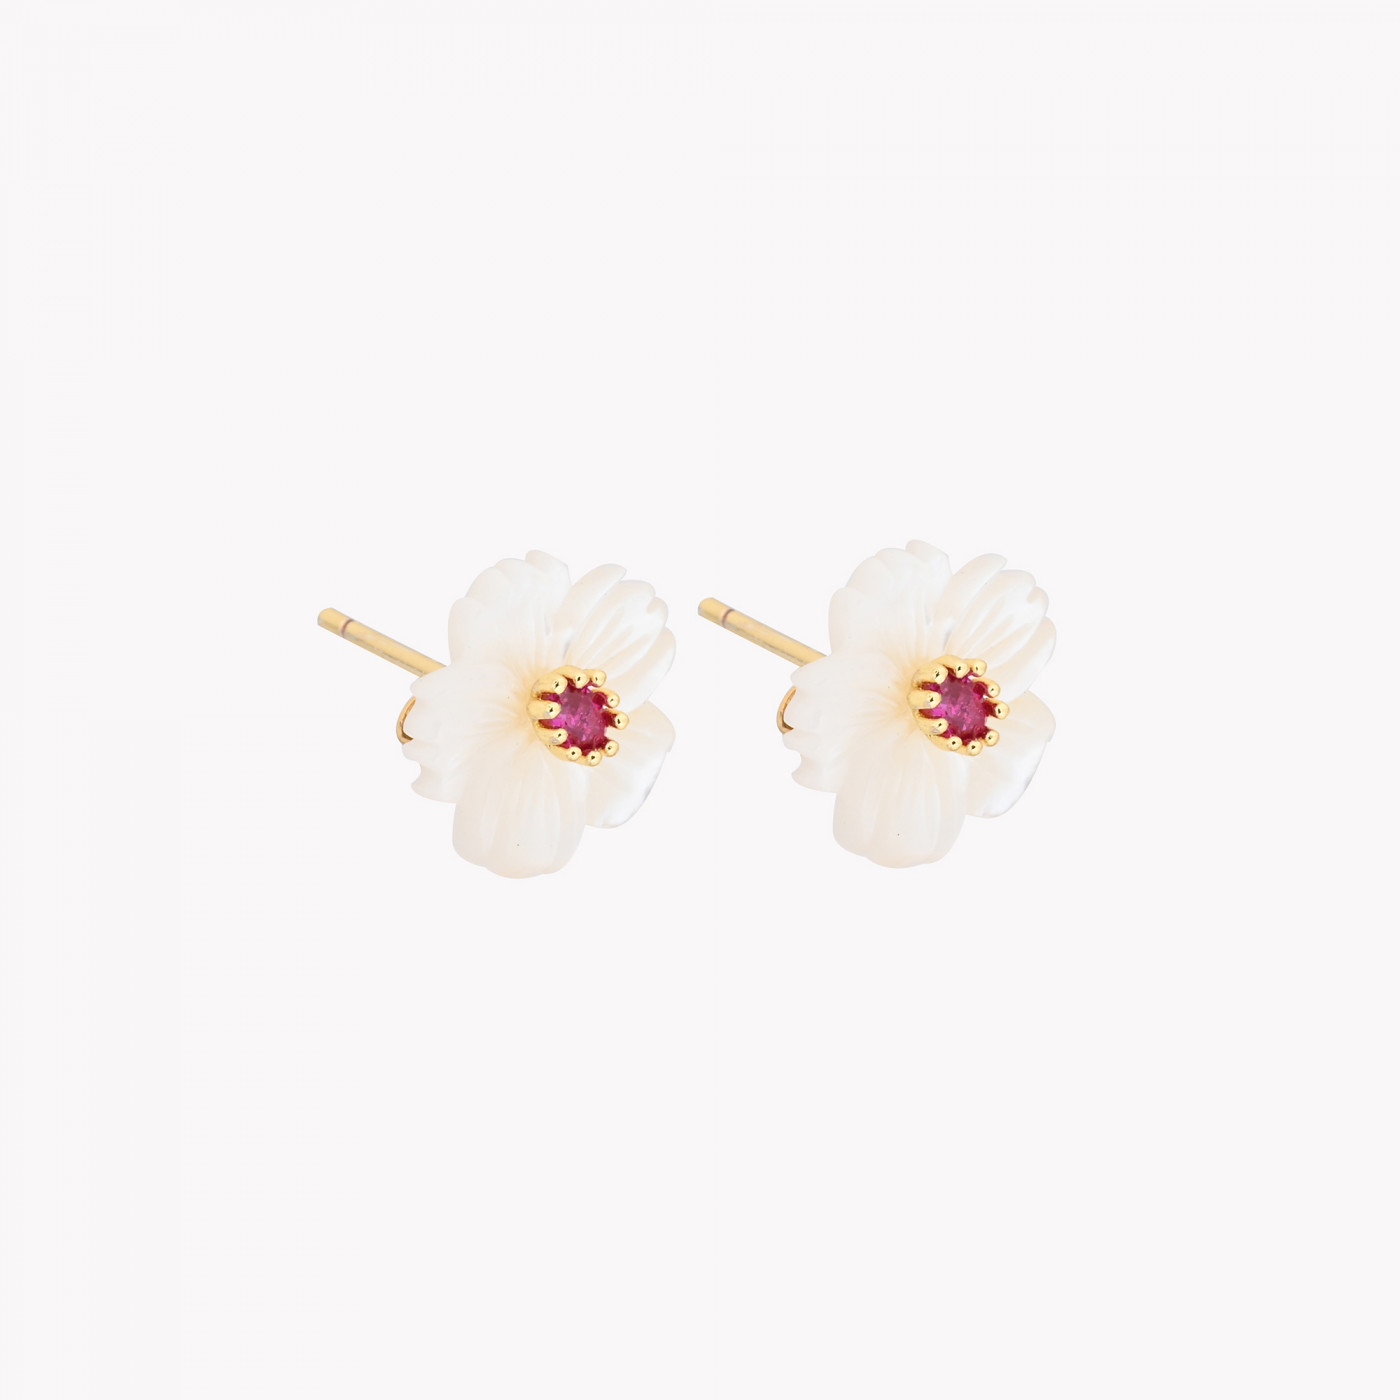 Brincos em aço e madrepérola em forma de flor com brilhante de cor e brilhantes brancos mais pequenos à volta